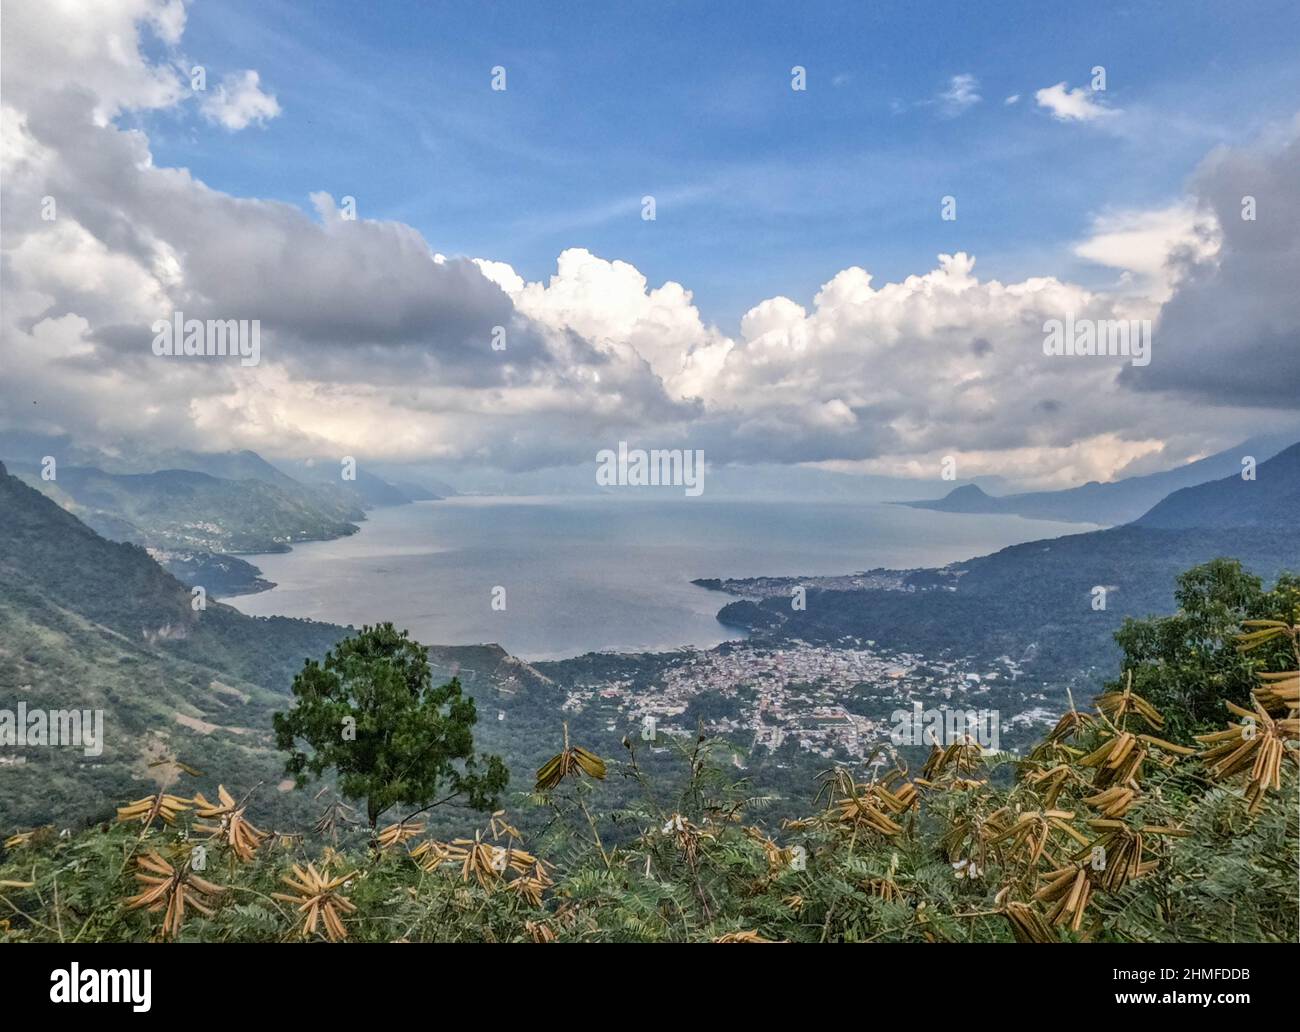 Beautiful Lake Atitlan and the Guatemalan highlands, Solola, Guatemala Stock Photo